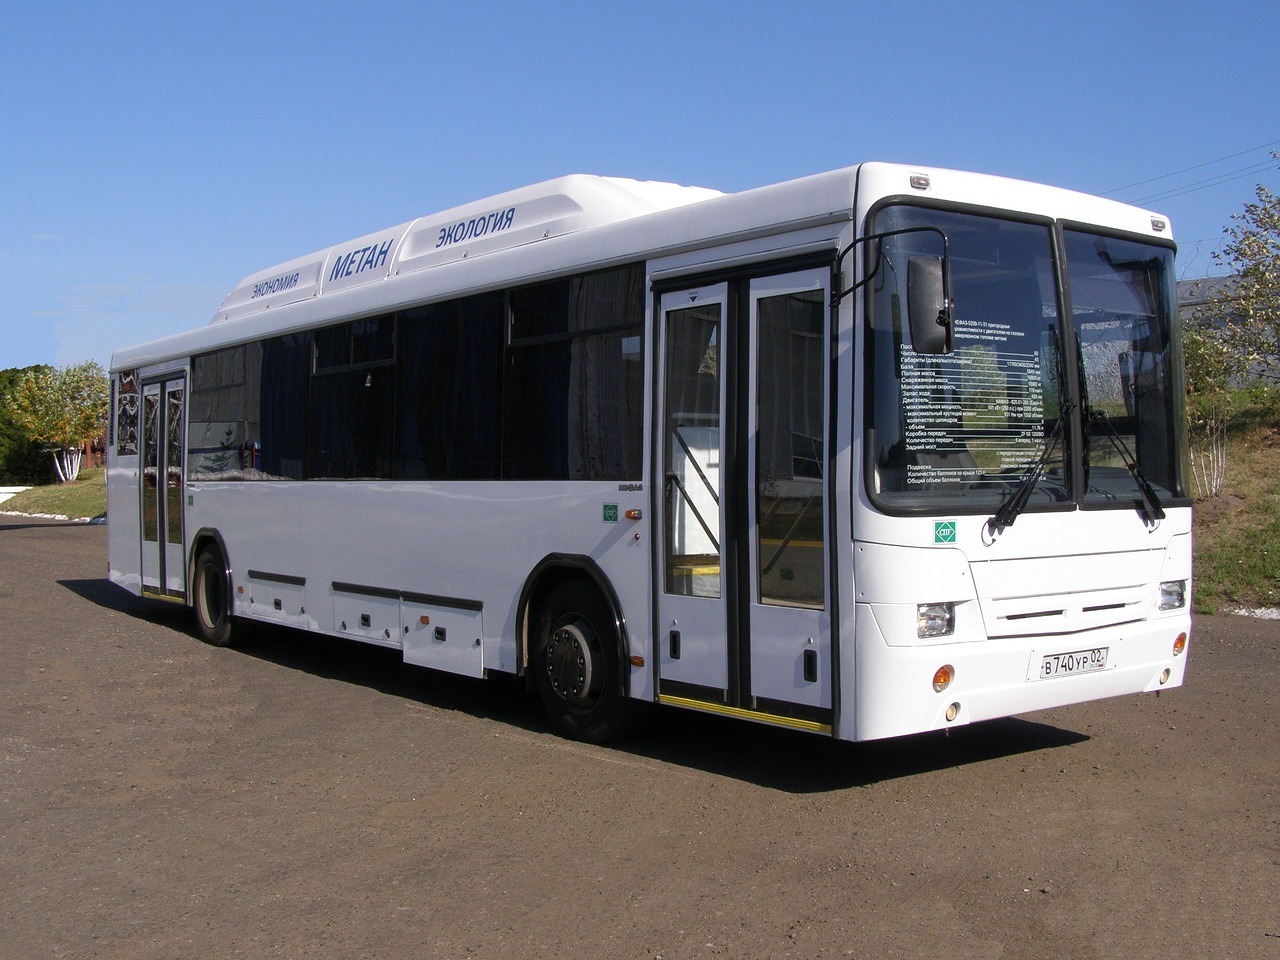 Нефаз туристический автобус фото